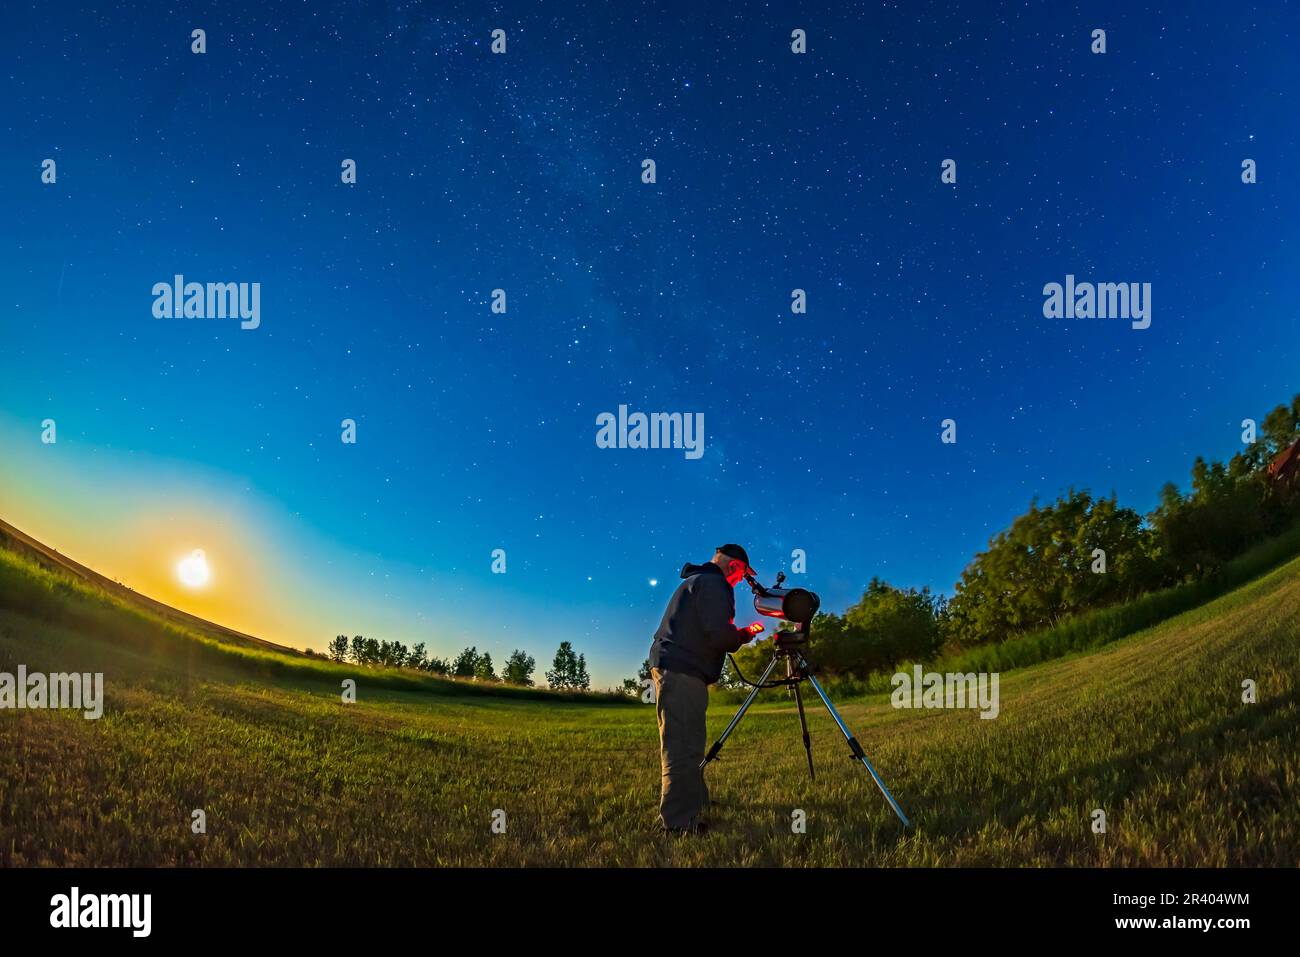 Astronomo che usa un telescopio nel cortile posteriore in una notte di luna luminosa, con la luna gibbosa in declino che si alza a sinistra. Foto Stock